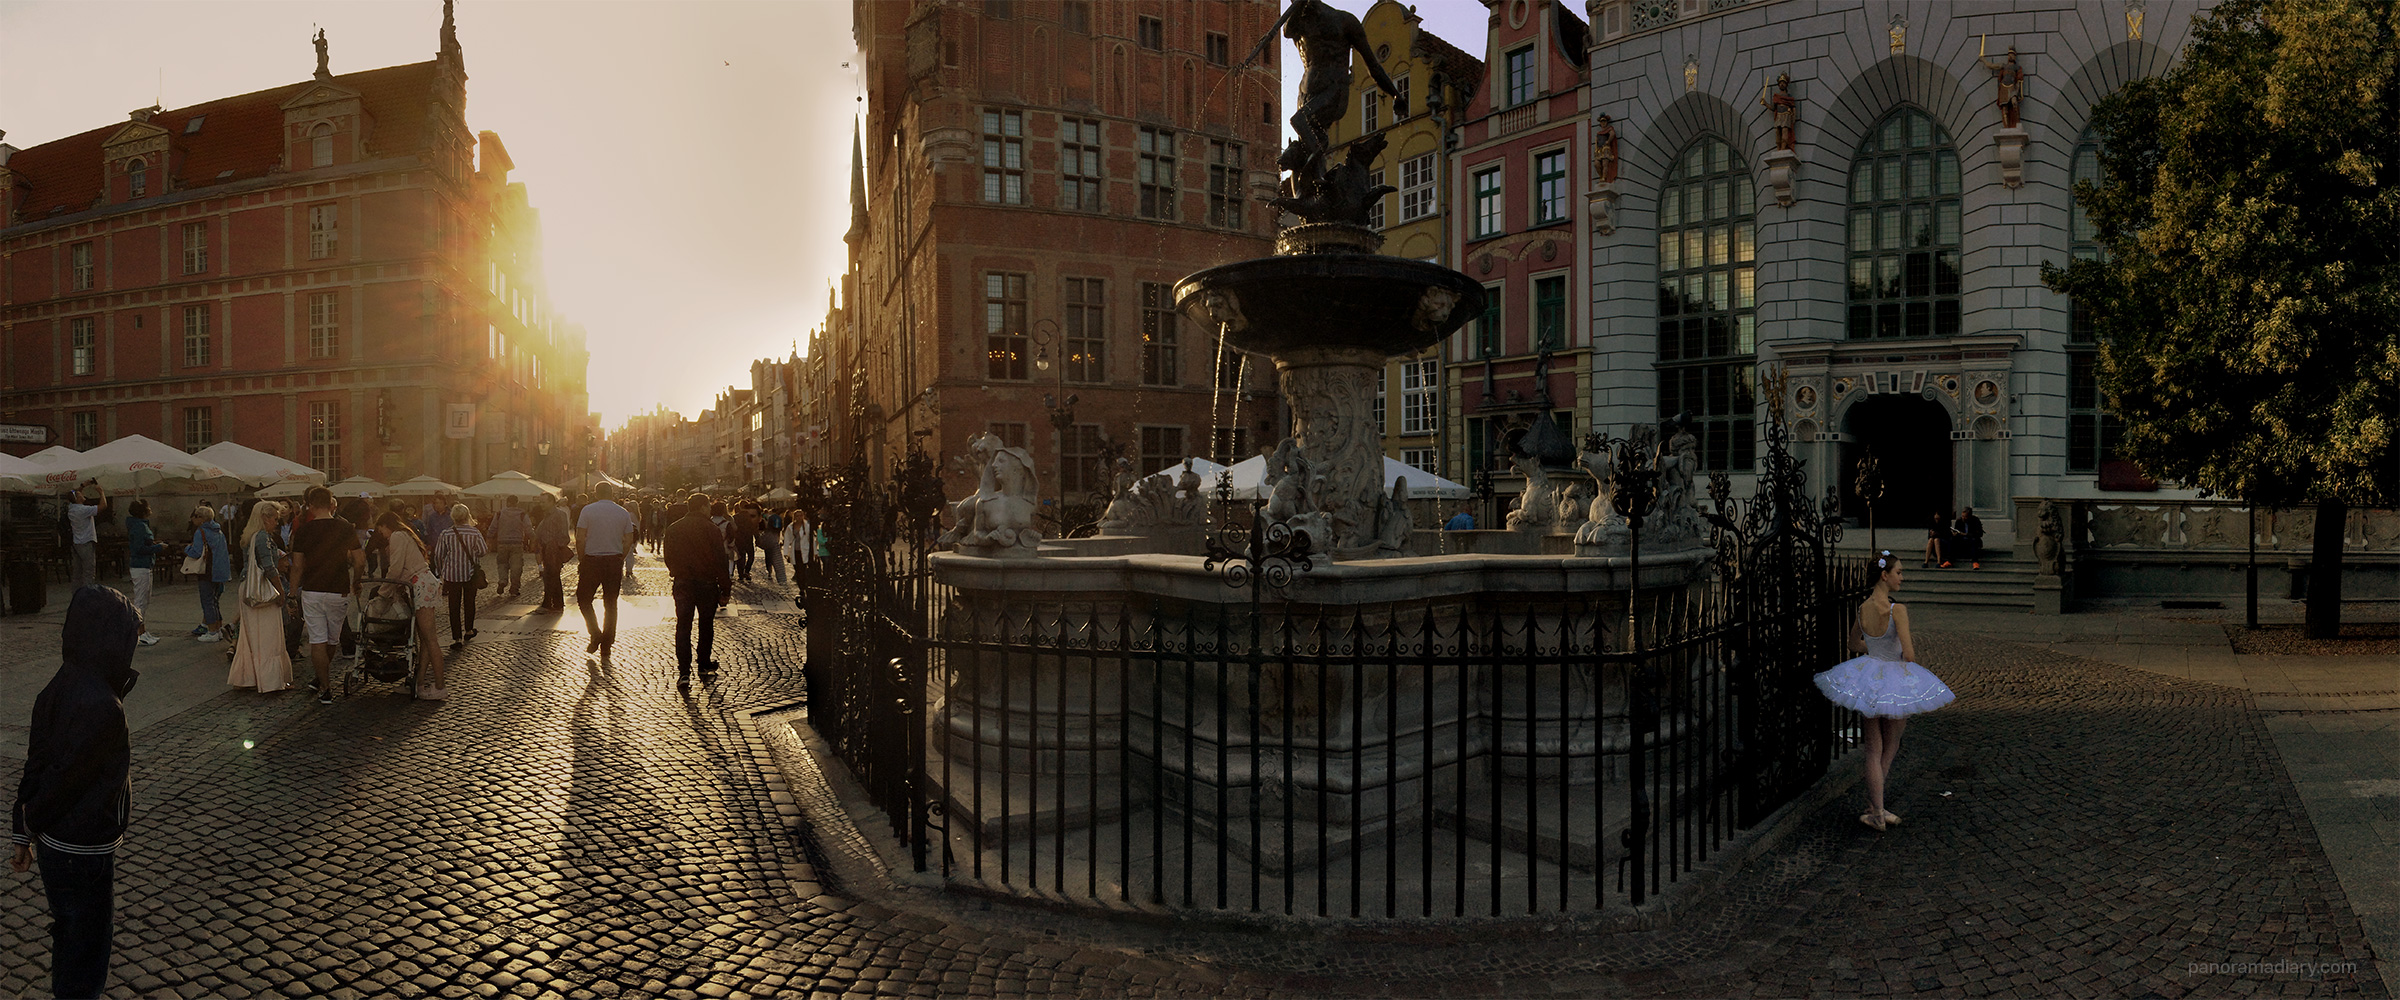 PANORAMA DIARY | Gdańsk Neptune fountain